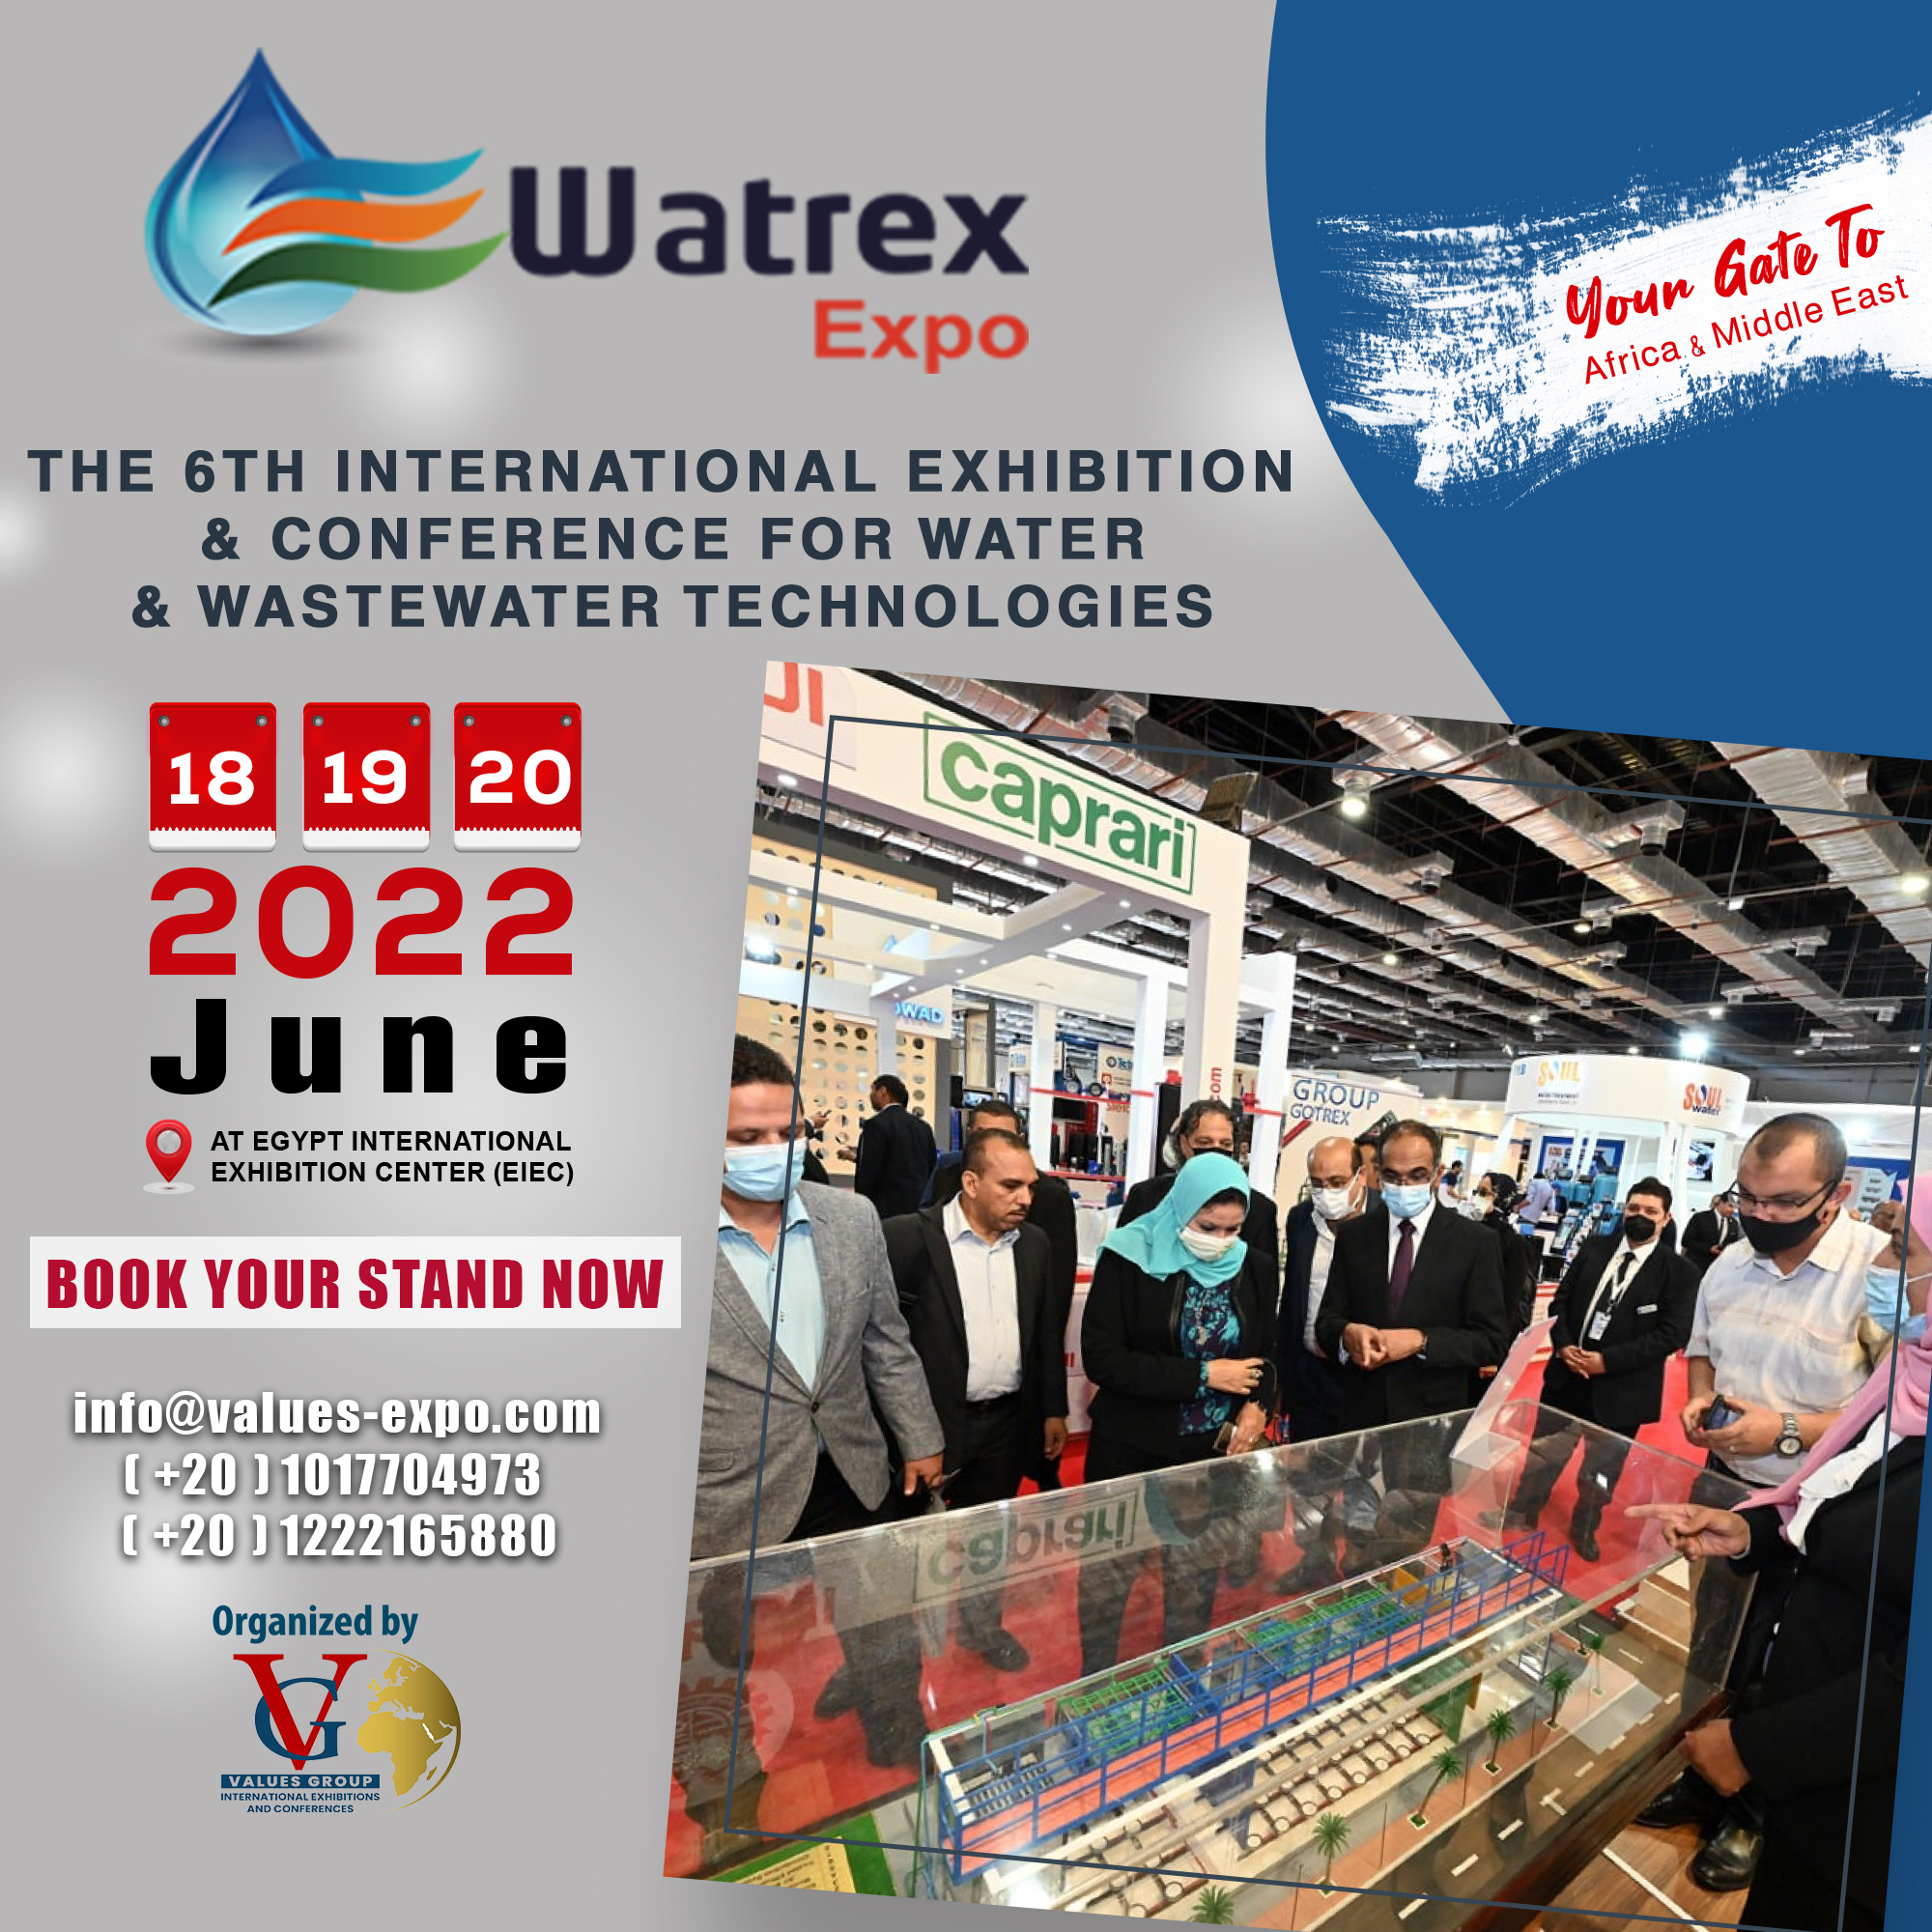 Watrex Expo